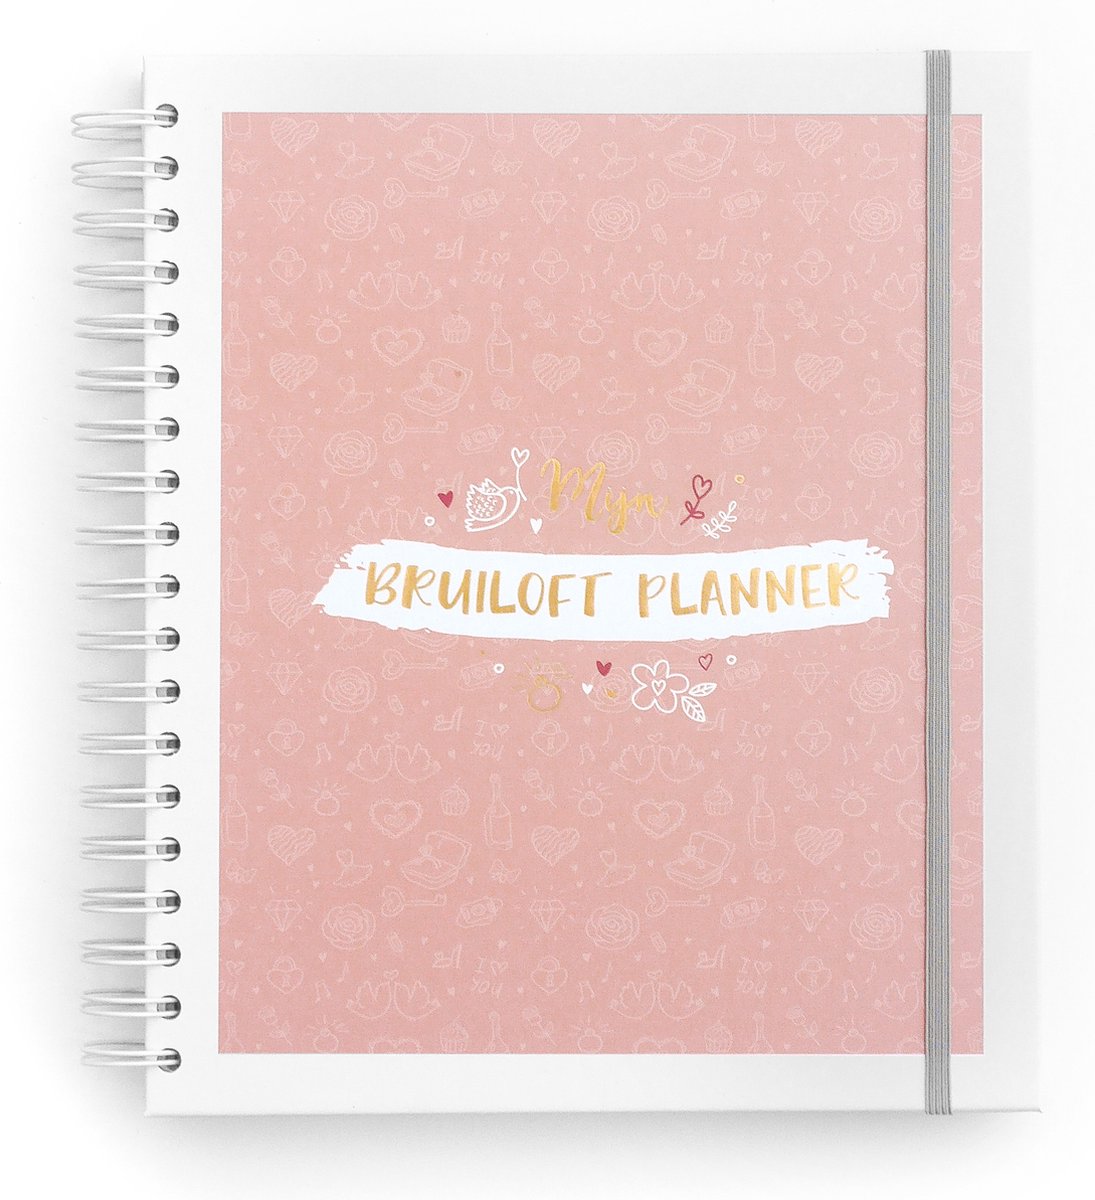 Maan Amsterdam Bruiloft Planner - Invulboek en planner voor álles rondom jouw bruiloft - Wedding planner